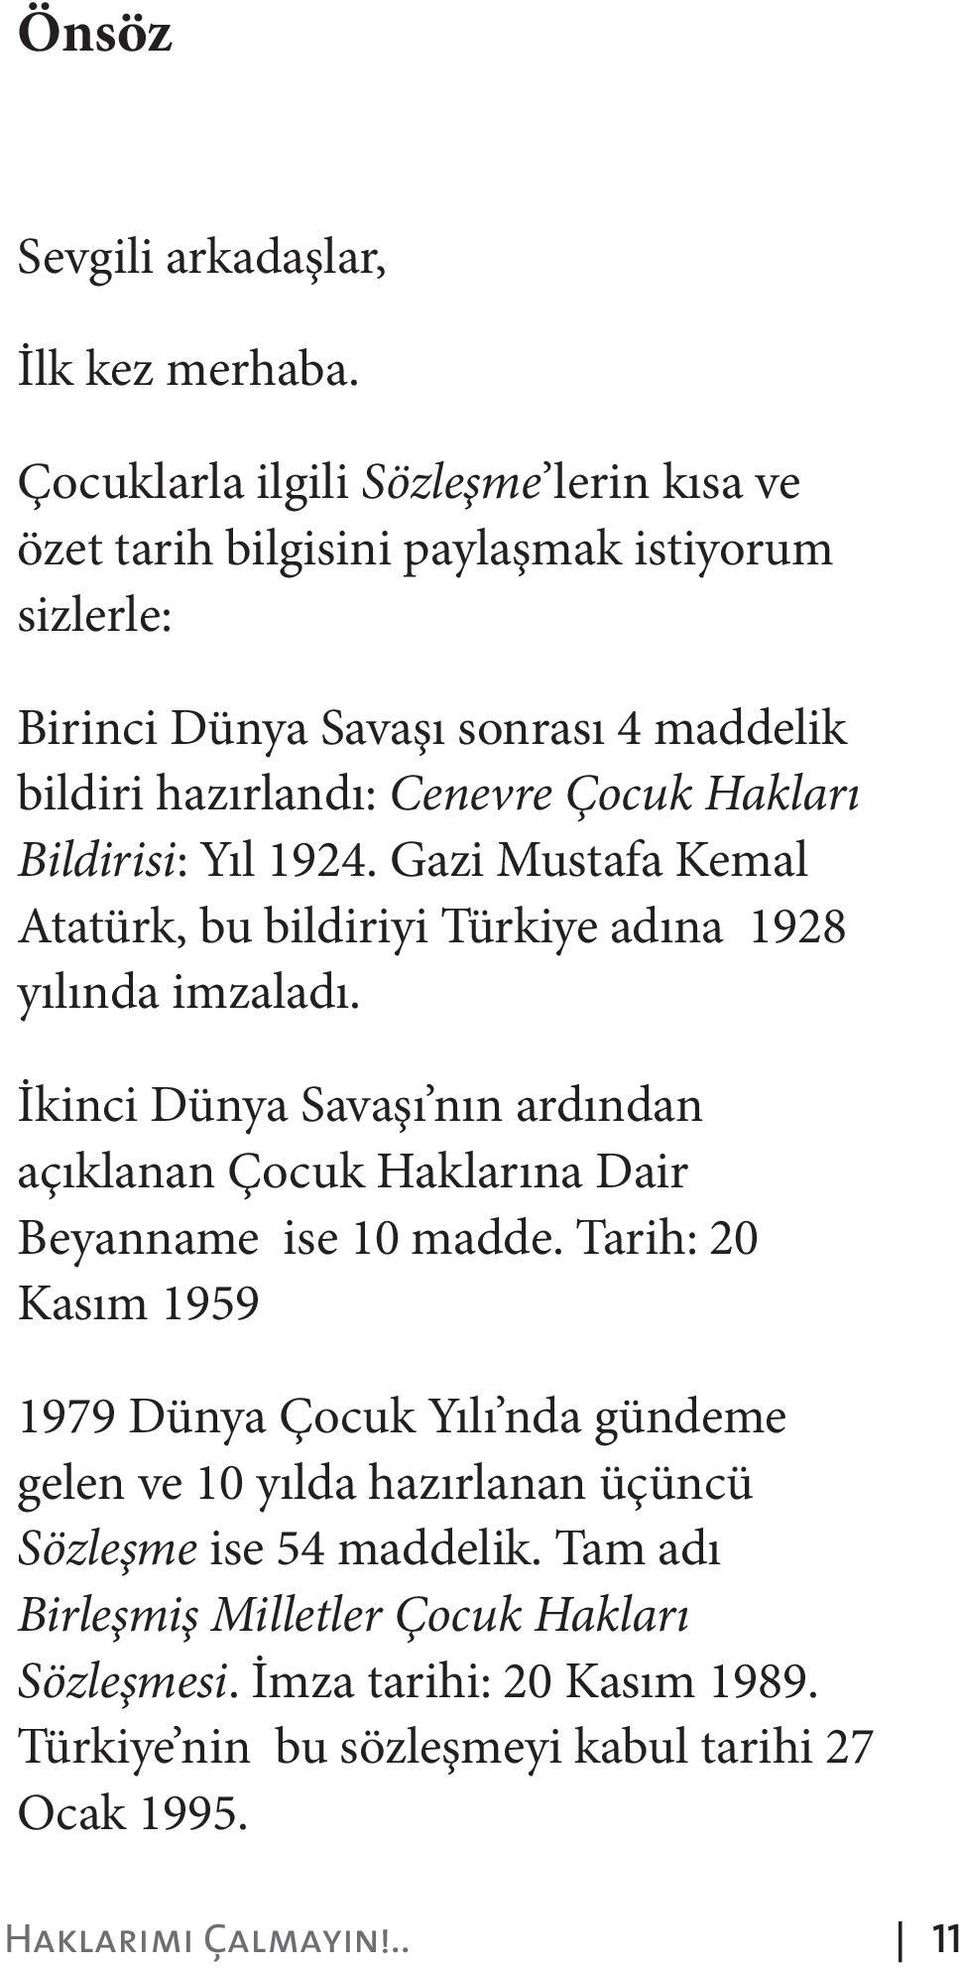 Hakları Bildirisi: Yıl 1924. Gazi Mustafa Kemal Atatürk, bu bildiriyi Türkiye adına 1928 yılında imzaladı.